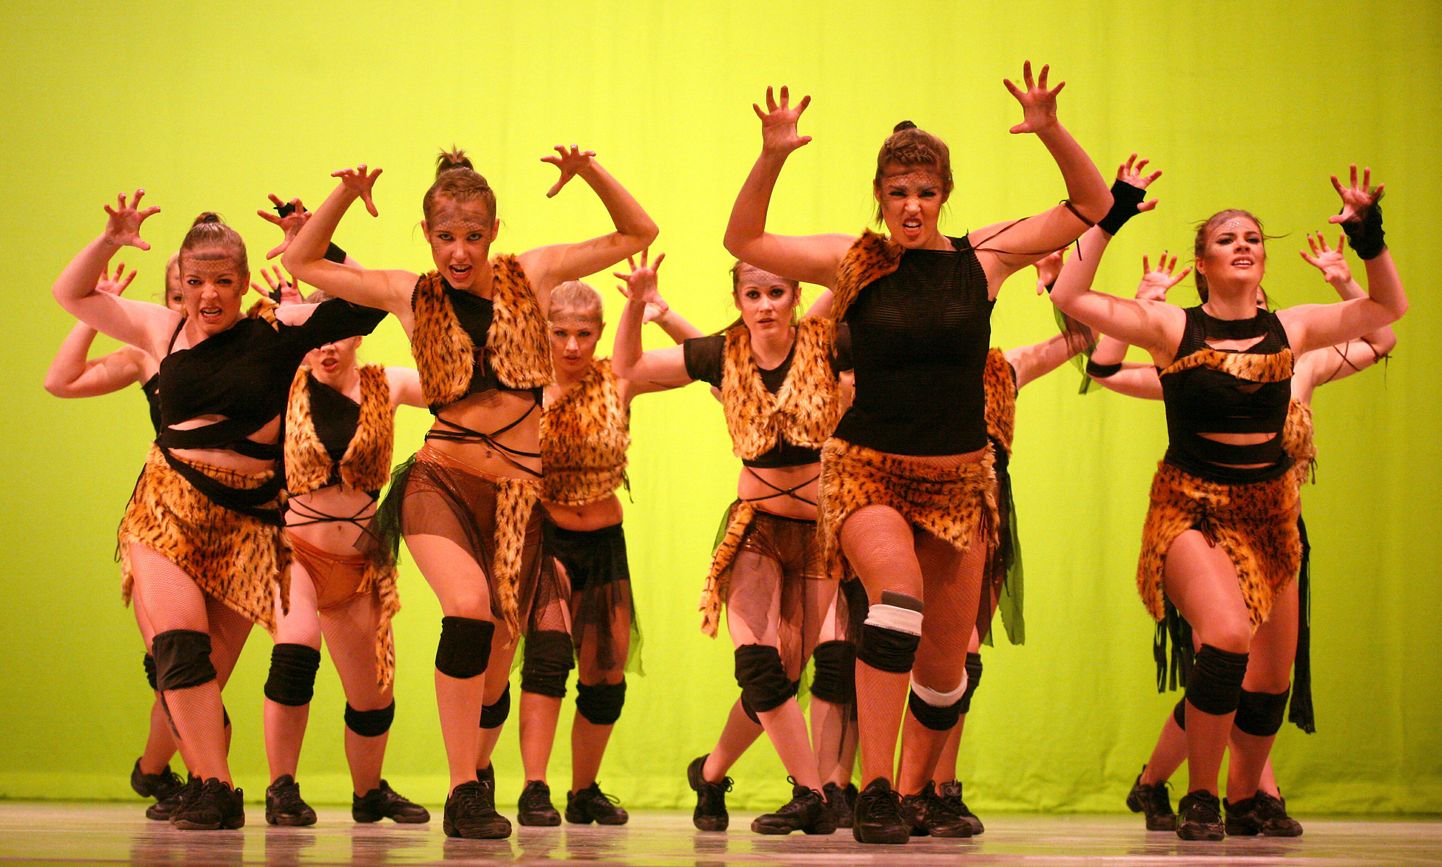 Pildil on eelmisel aastal festivalil "Koolitants" osalenud tantsukooli Waf Dance show-tants "Tundmatu hõim".